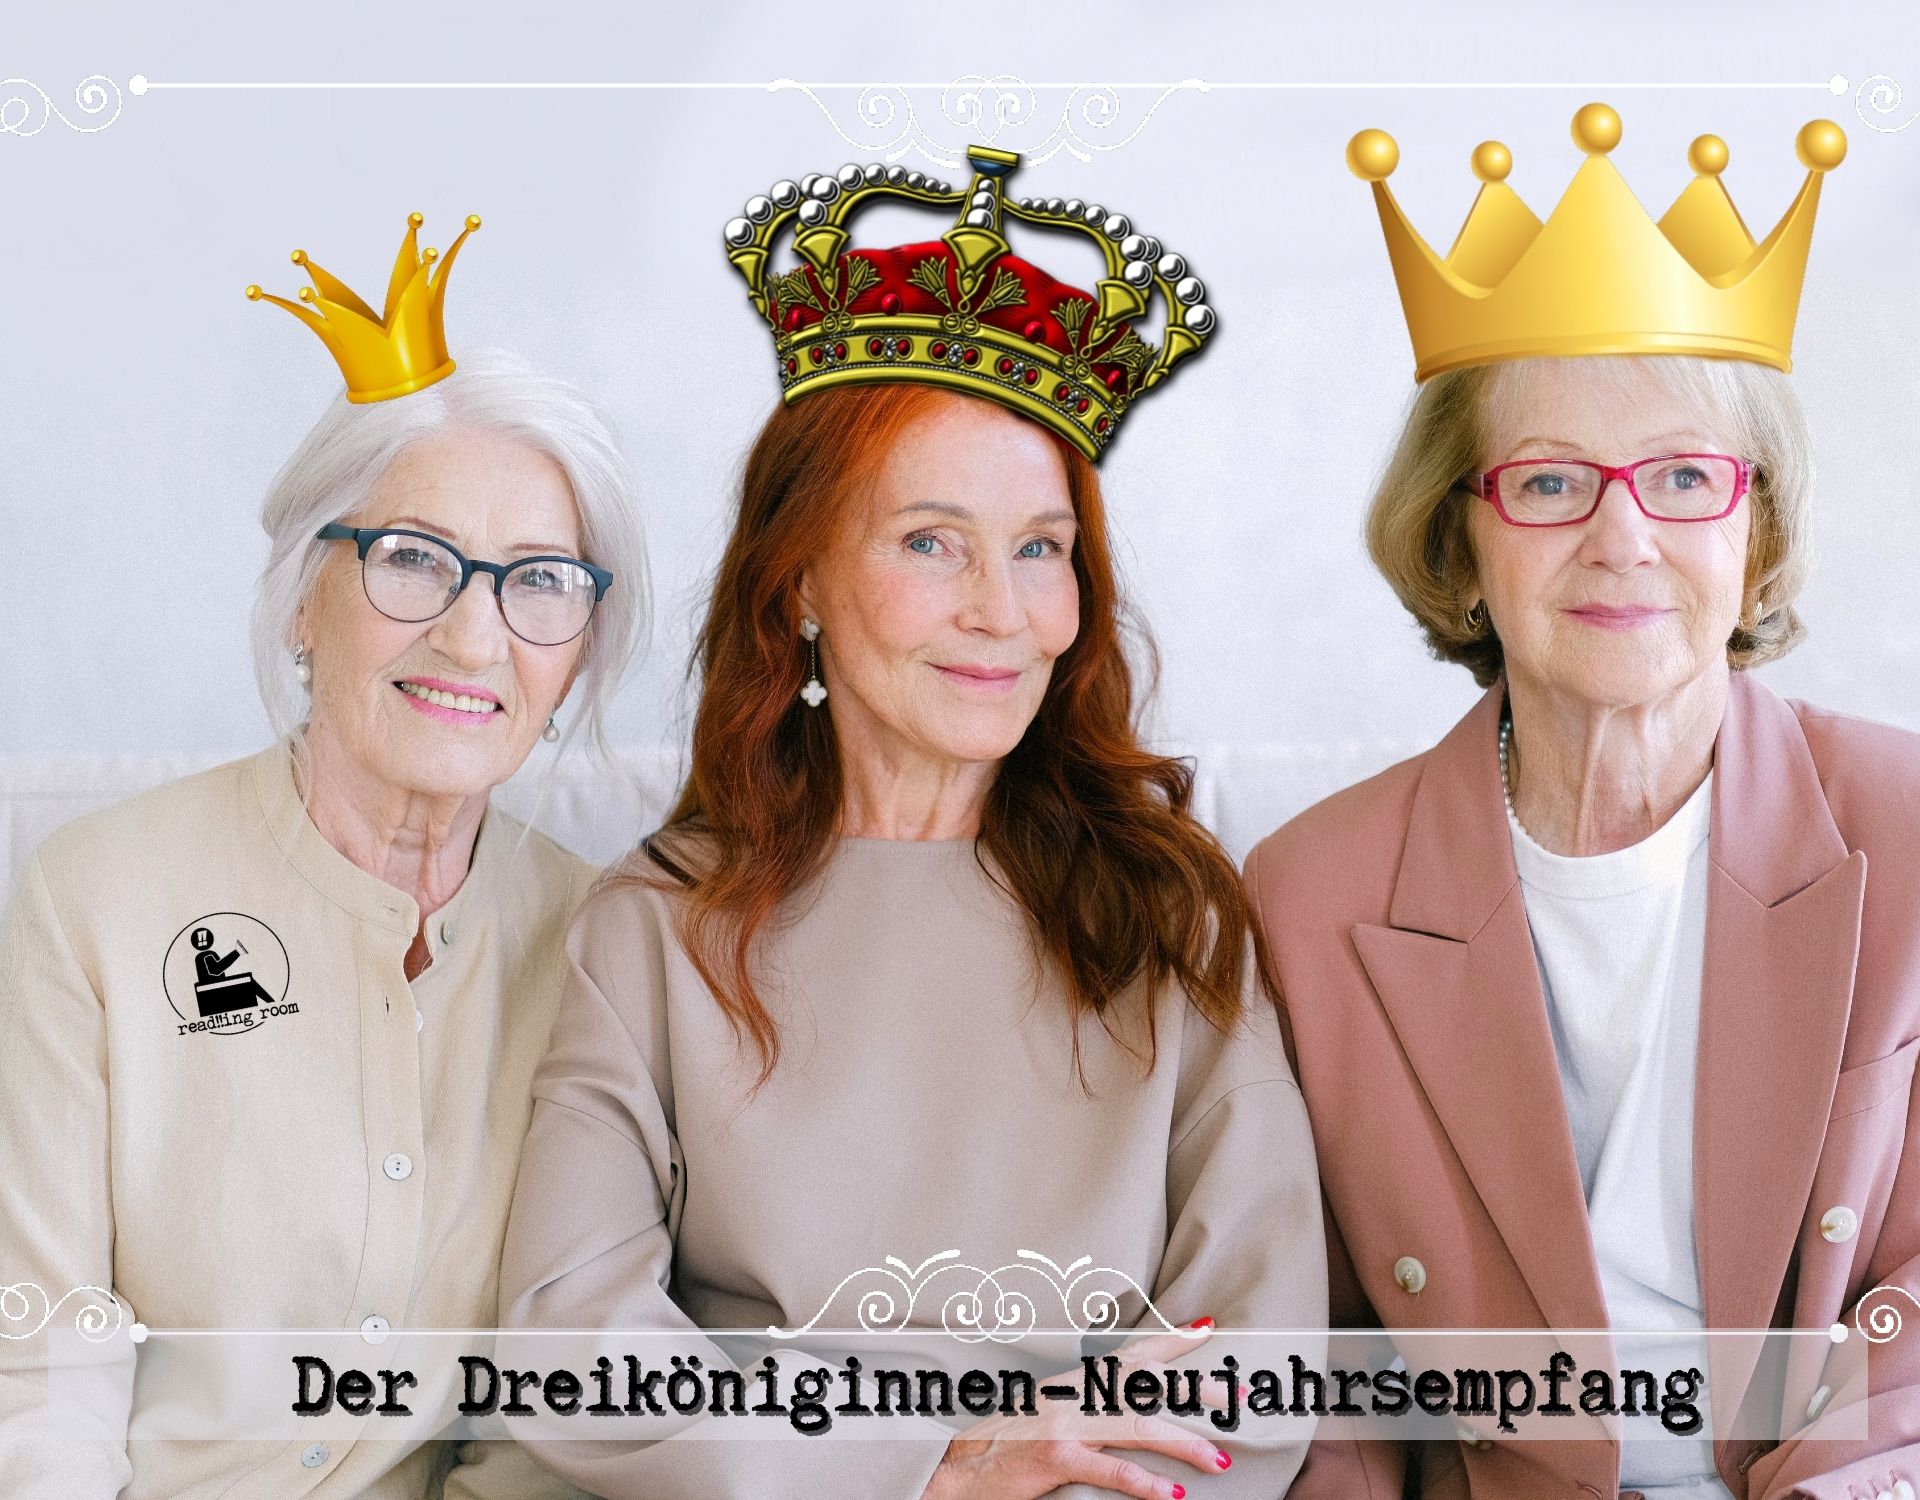 Der Dreiköniginnen-Neujahrsempfang programm